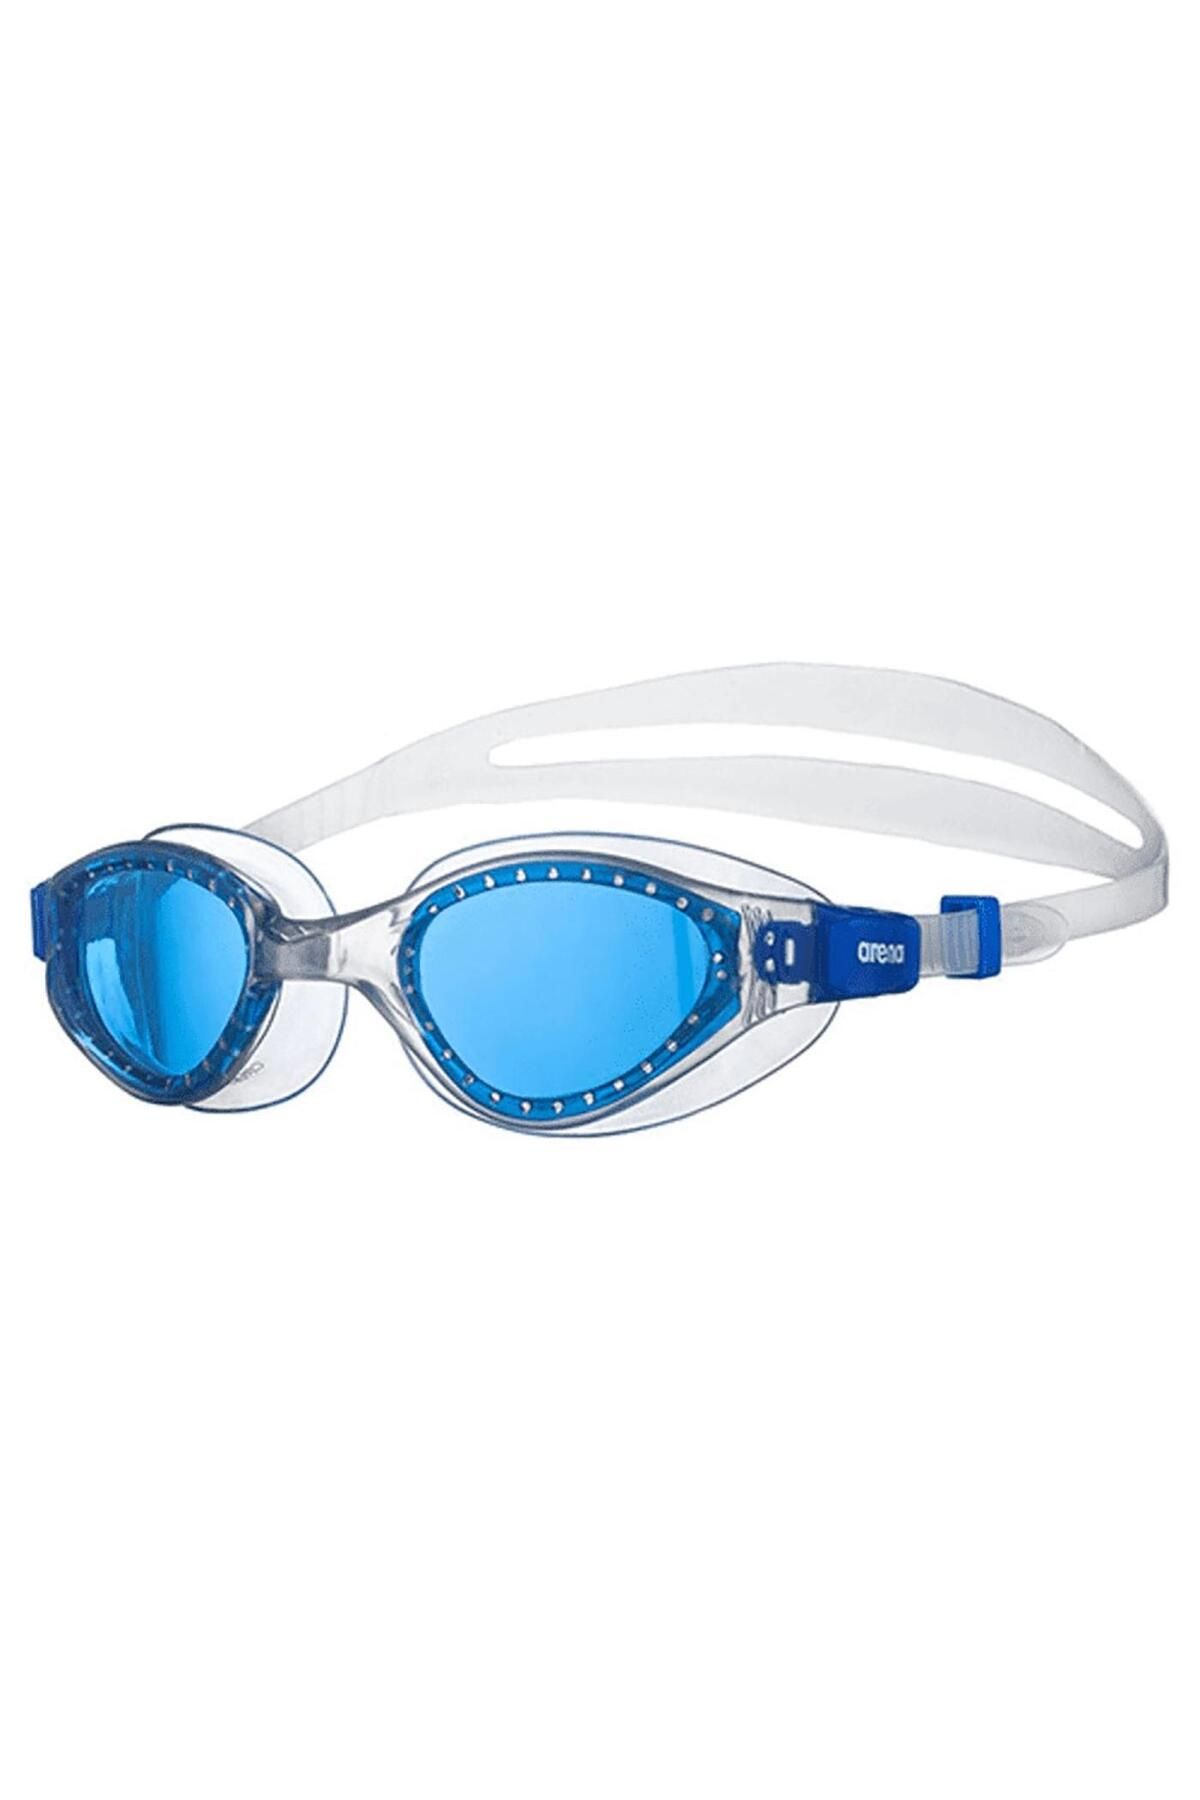 Arena Cruiser Evo Çocuk Mavi Yüzücü Gözlüğü-ar002510710711